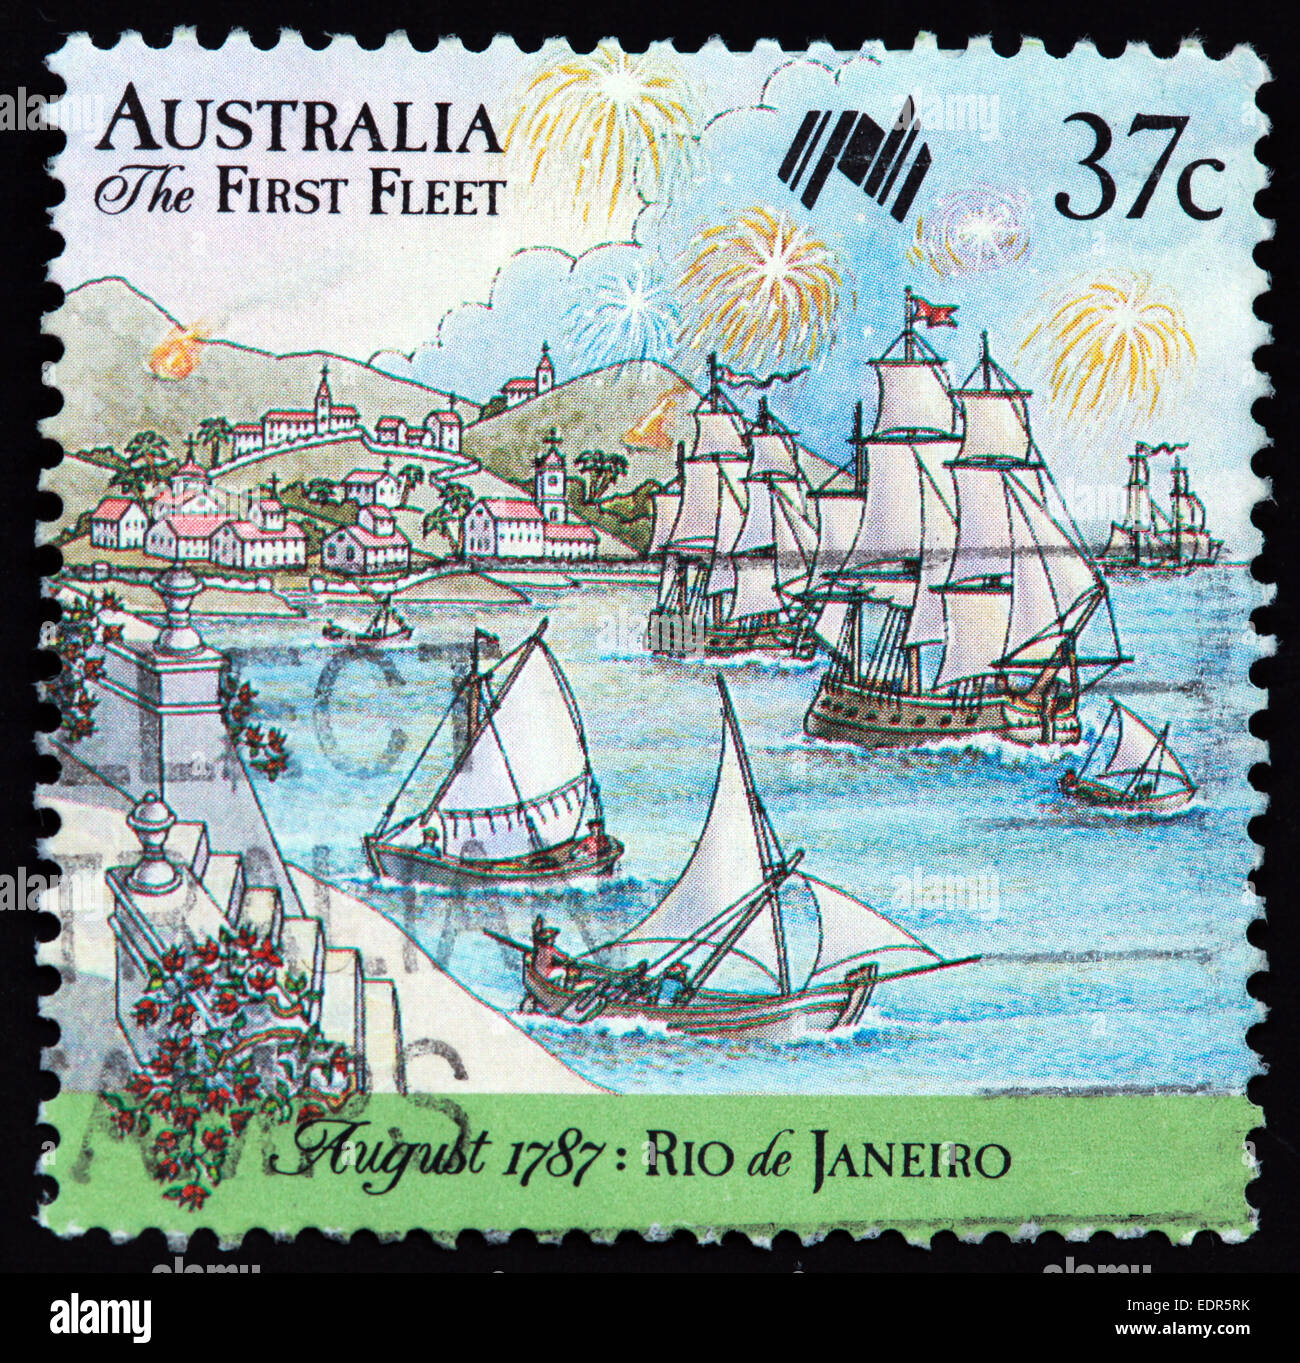 Utilisé et oblitérée Australie / Austrailian Stamp 37c la première flotte d'août 1787 Rio de Janeiro Banque D'Images